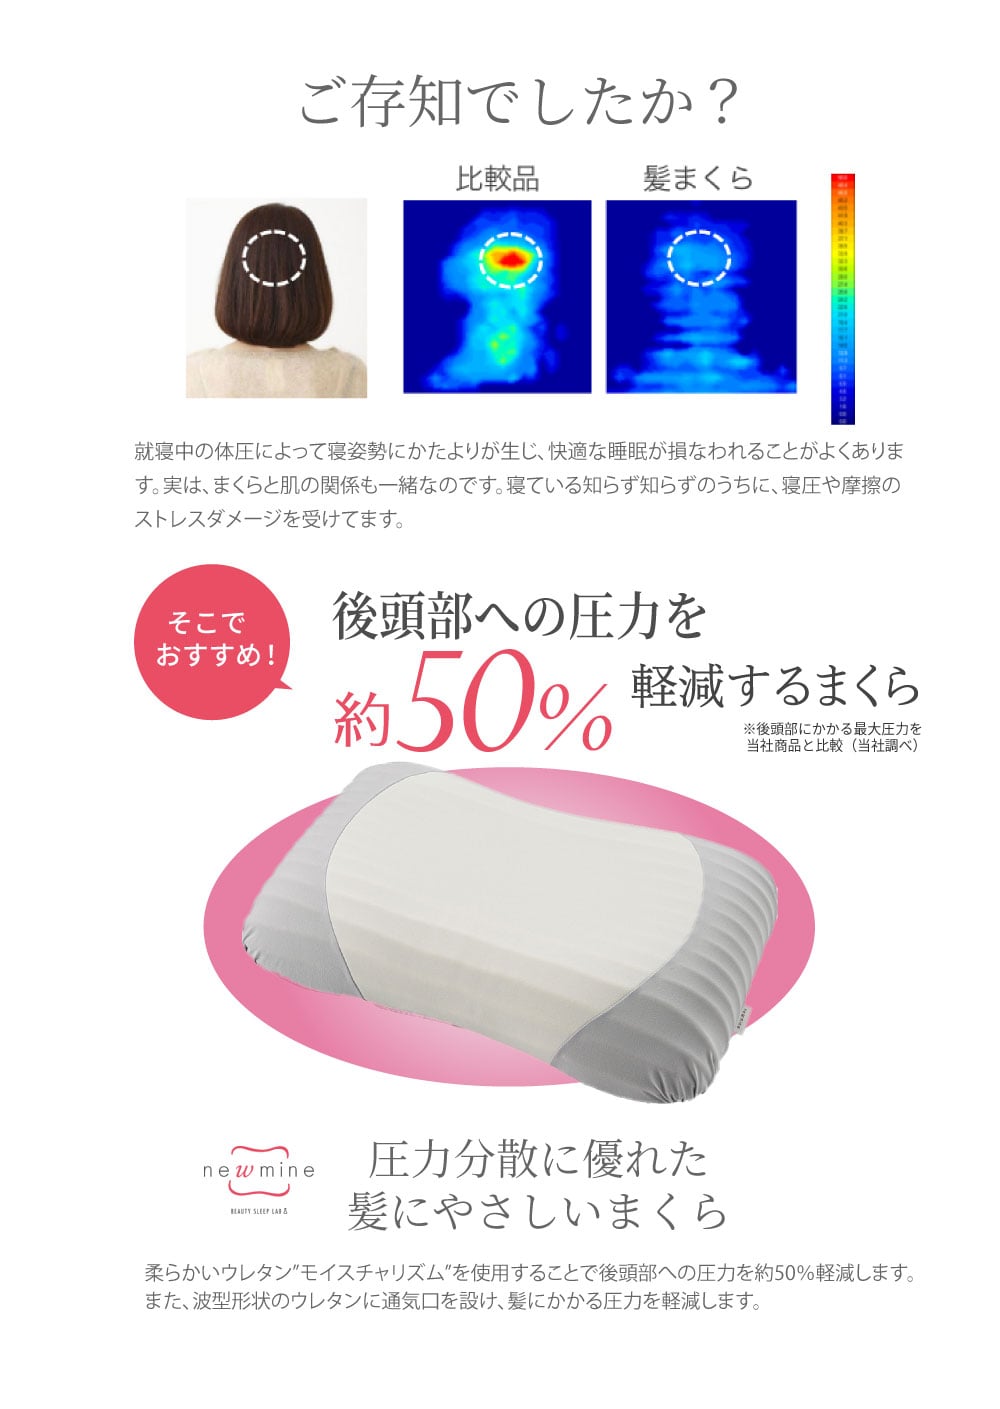 newmine 髪にやさしいまくら(60×37×12cm グレー): 枕・抱き枕│西川公式オンラインショップ 寝具通販サイト